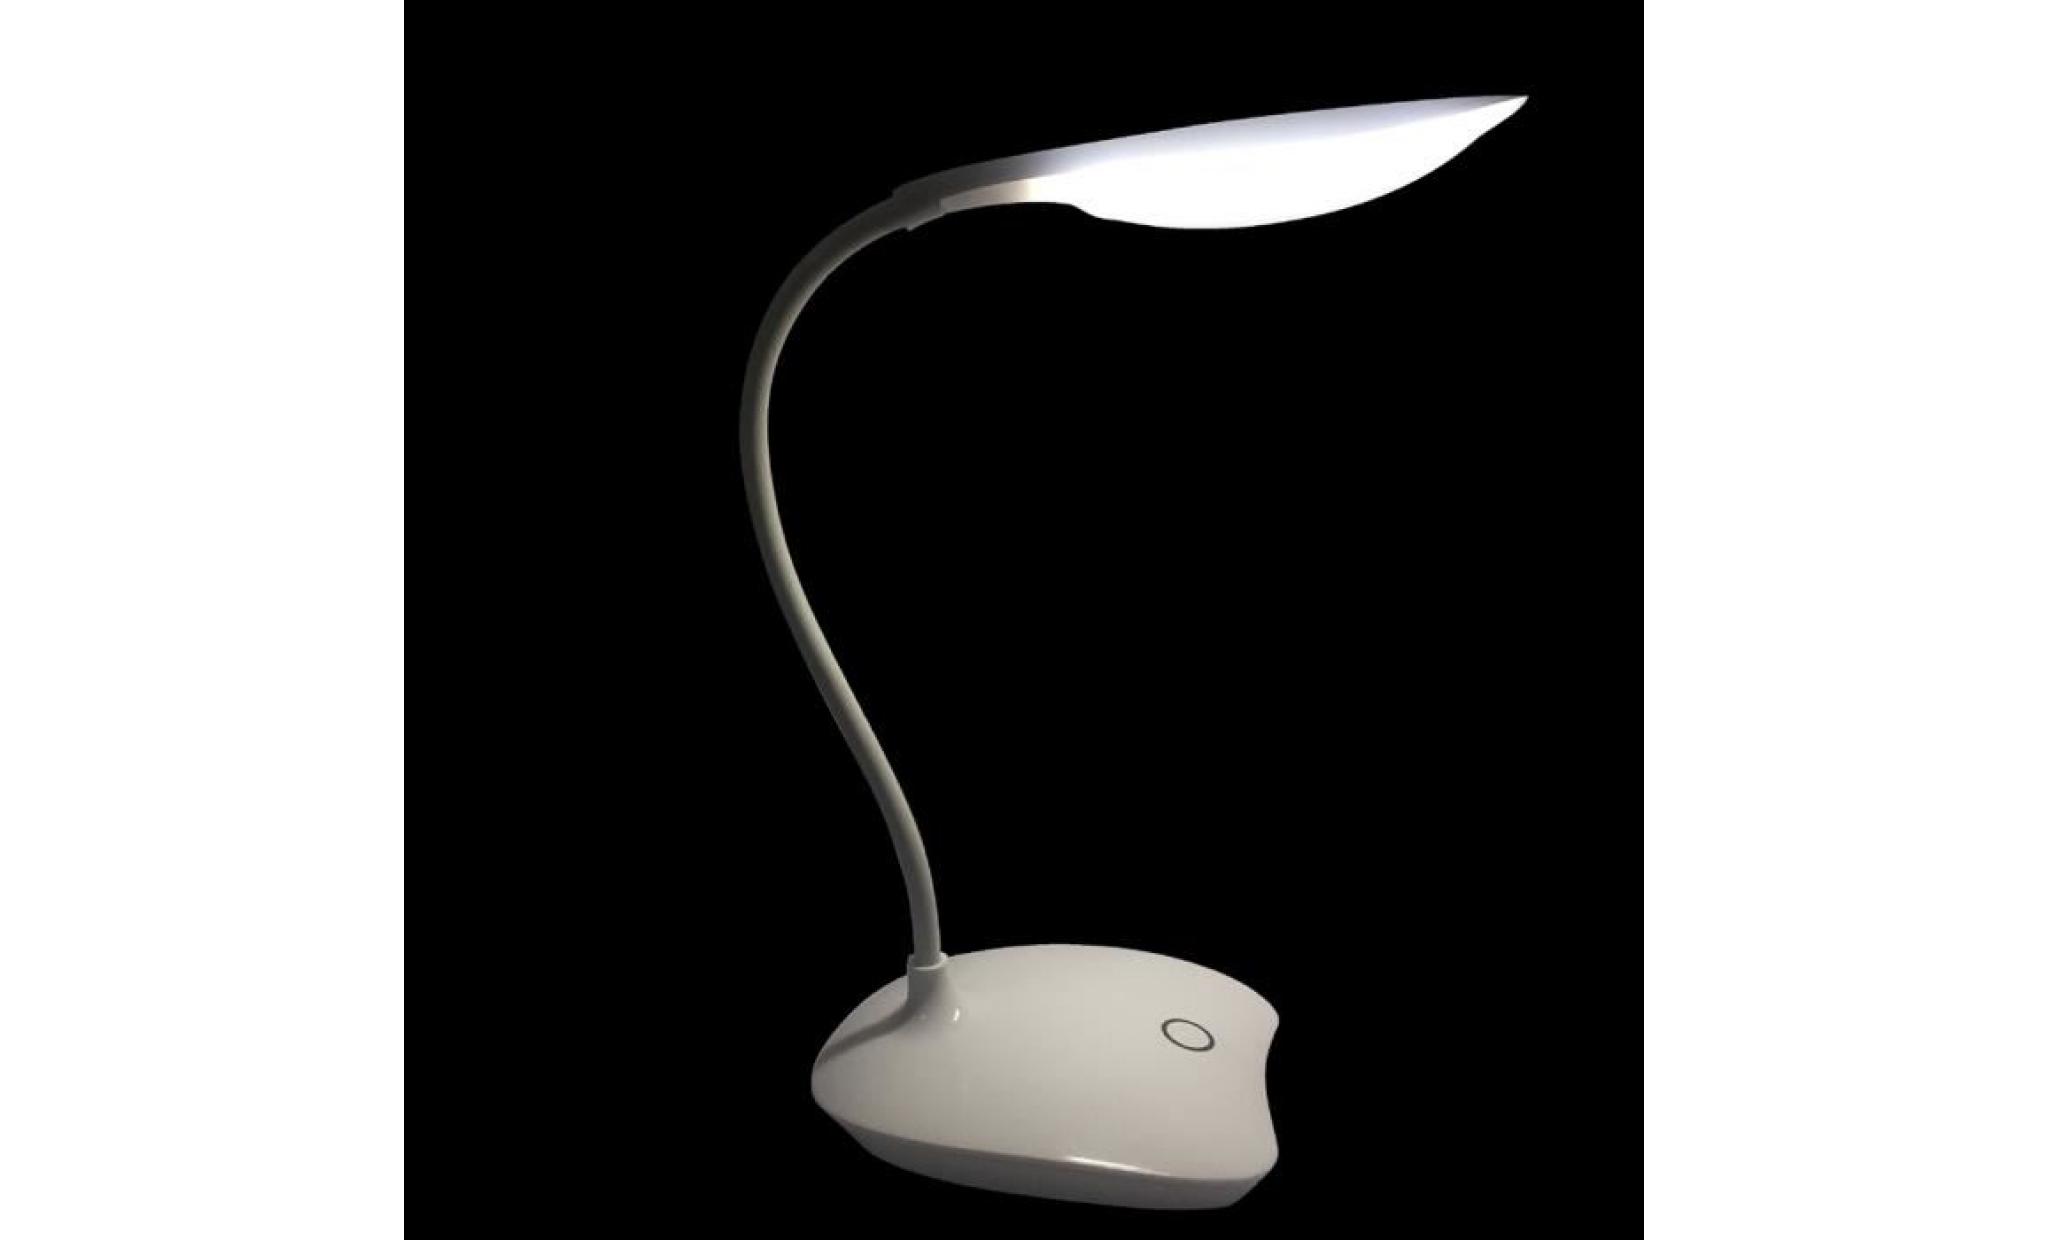 lampe de table led protection des yeux commande tactile 3 niveaux dimmable lampe de bureau rechargeable lampe de chevet